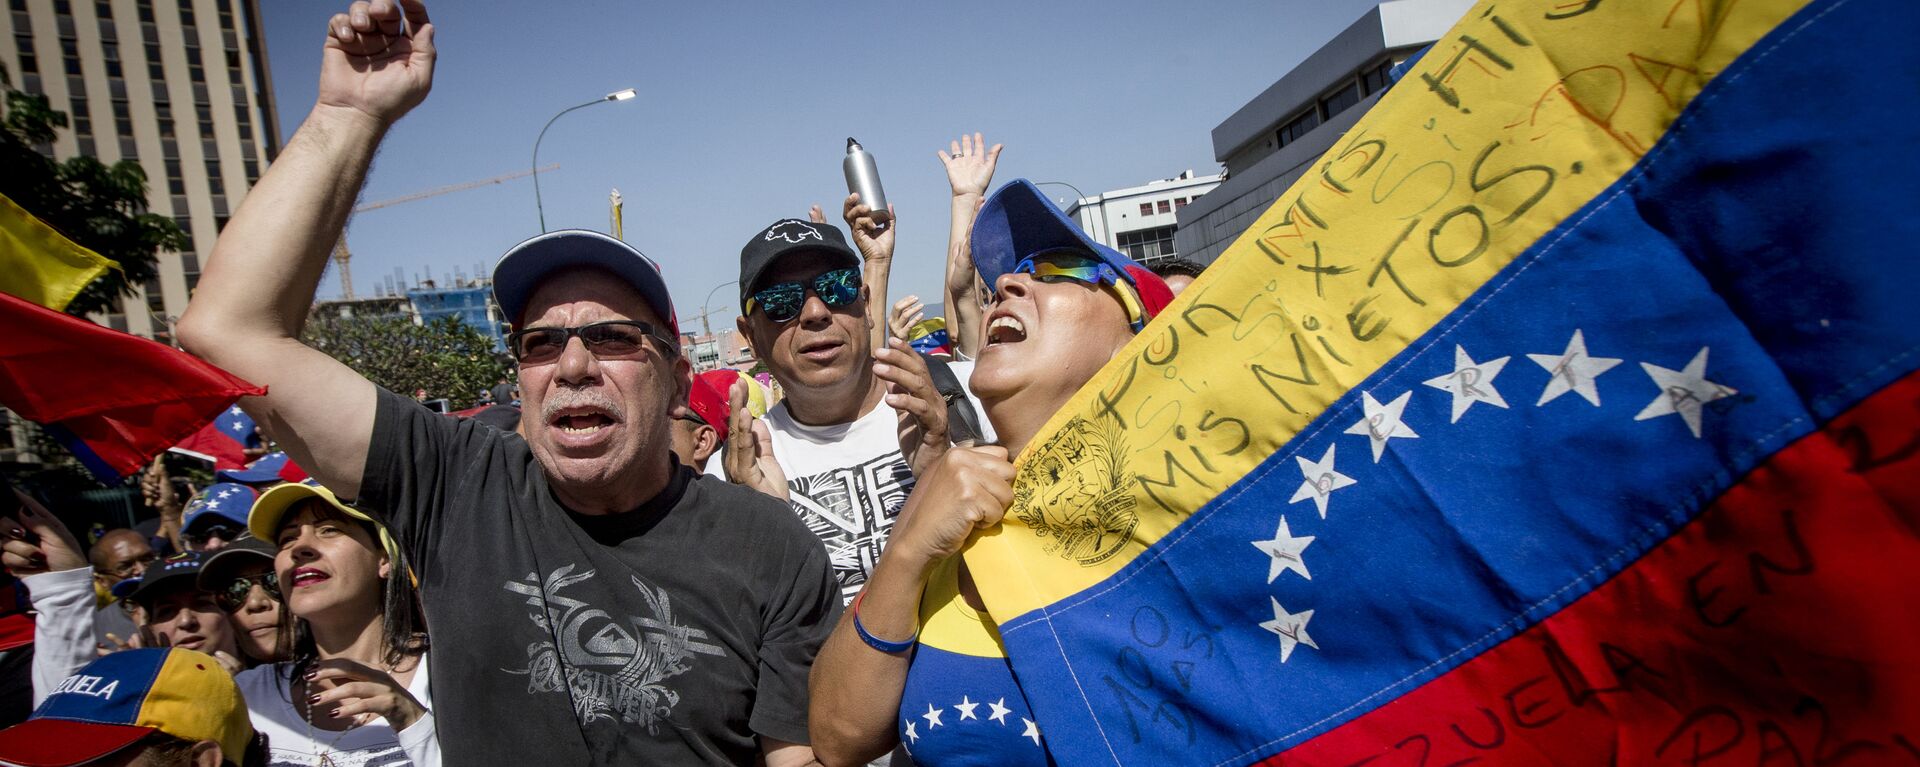 Las dos caras de Caracas: las manifestaciones con los partidarios de Maduro y Guaidó - Sputnik Mundo, 1920, 17.05.2022